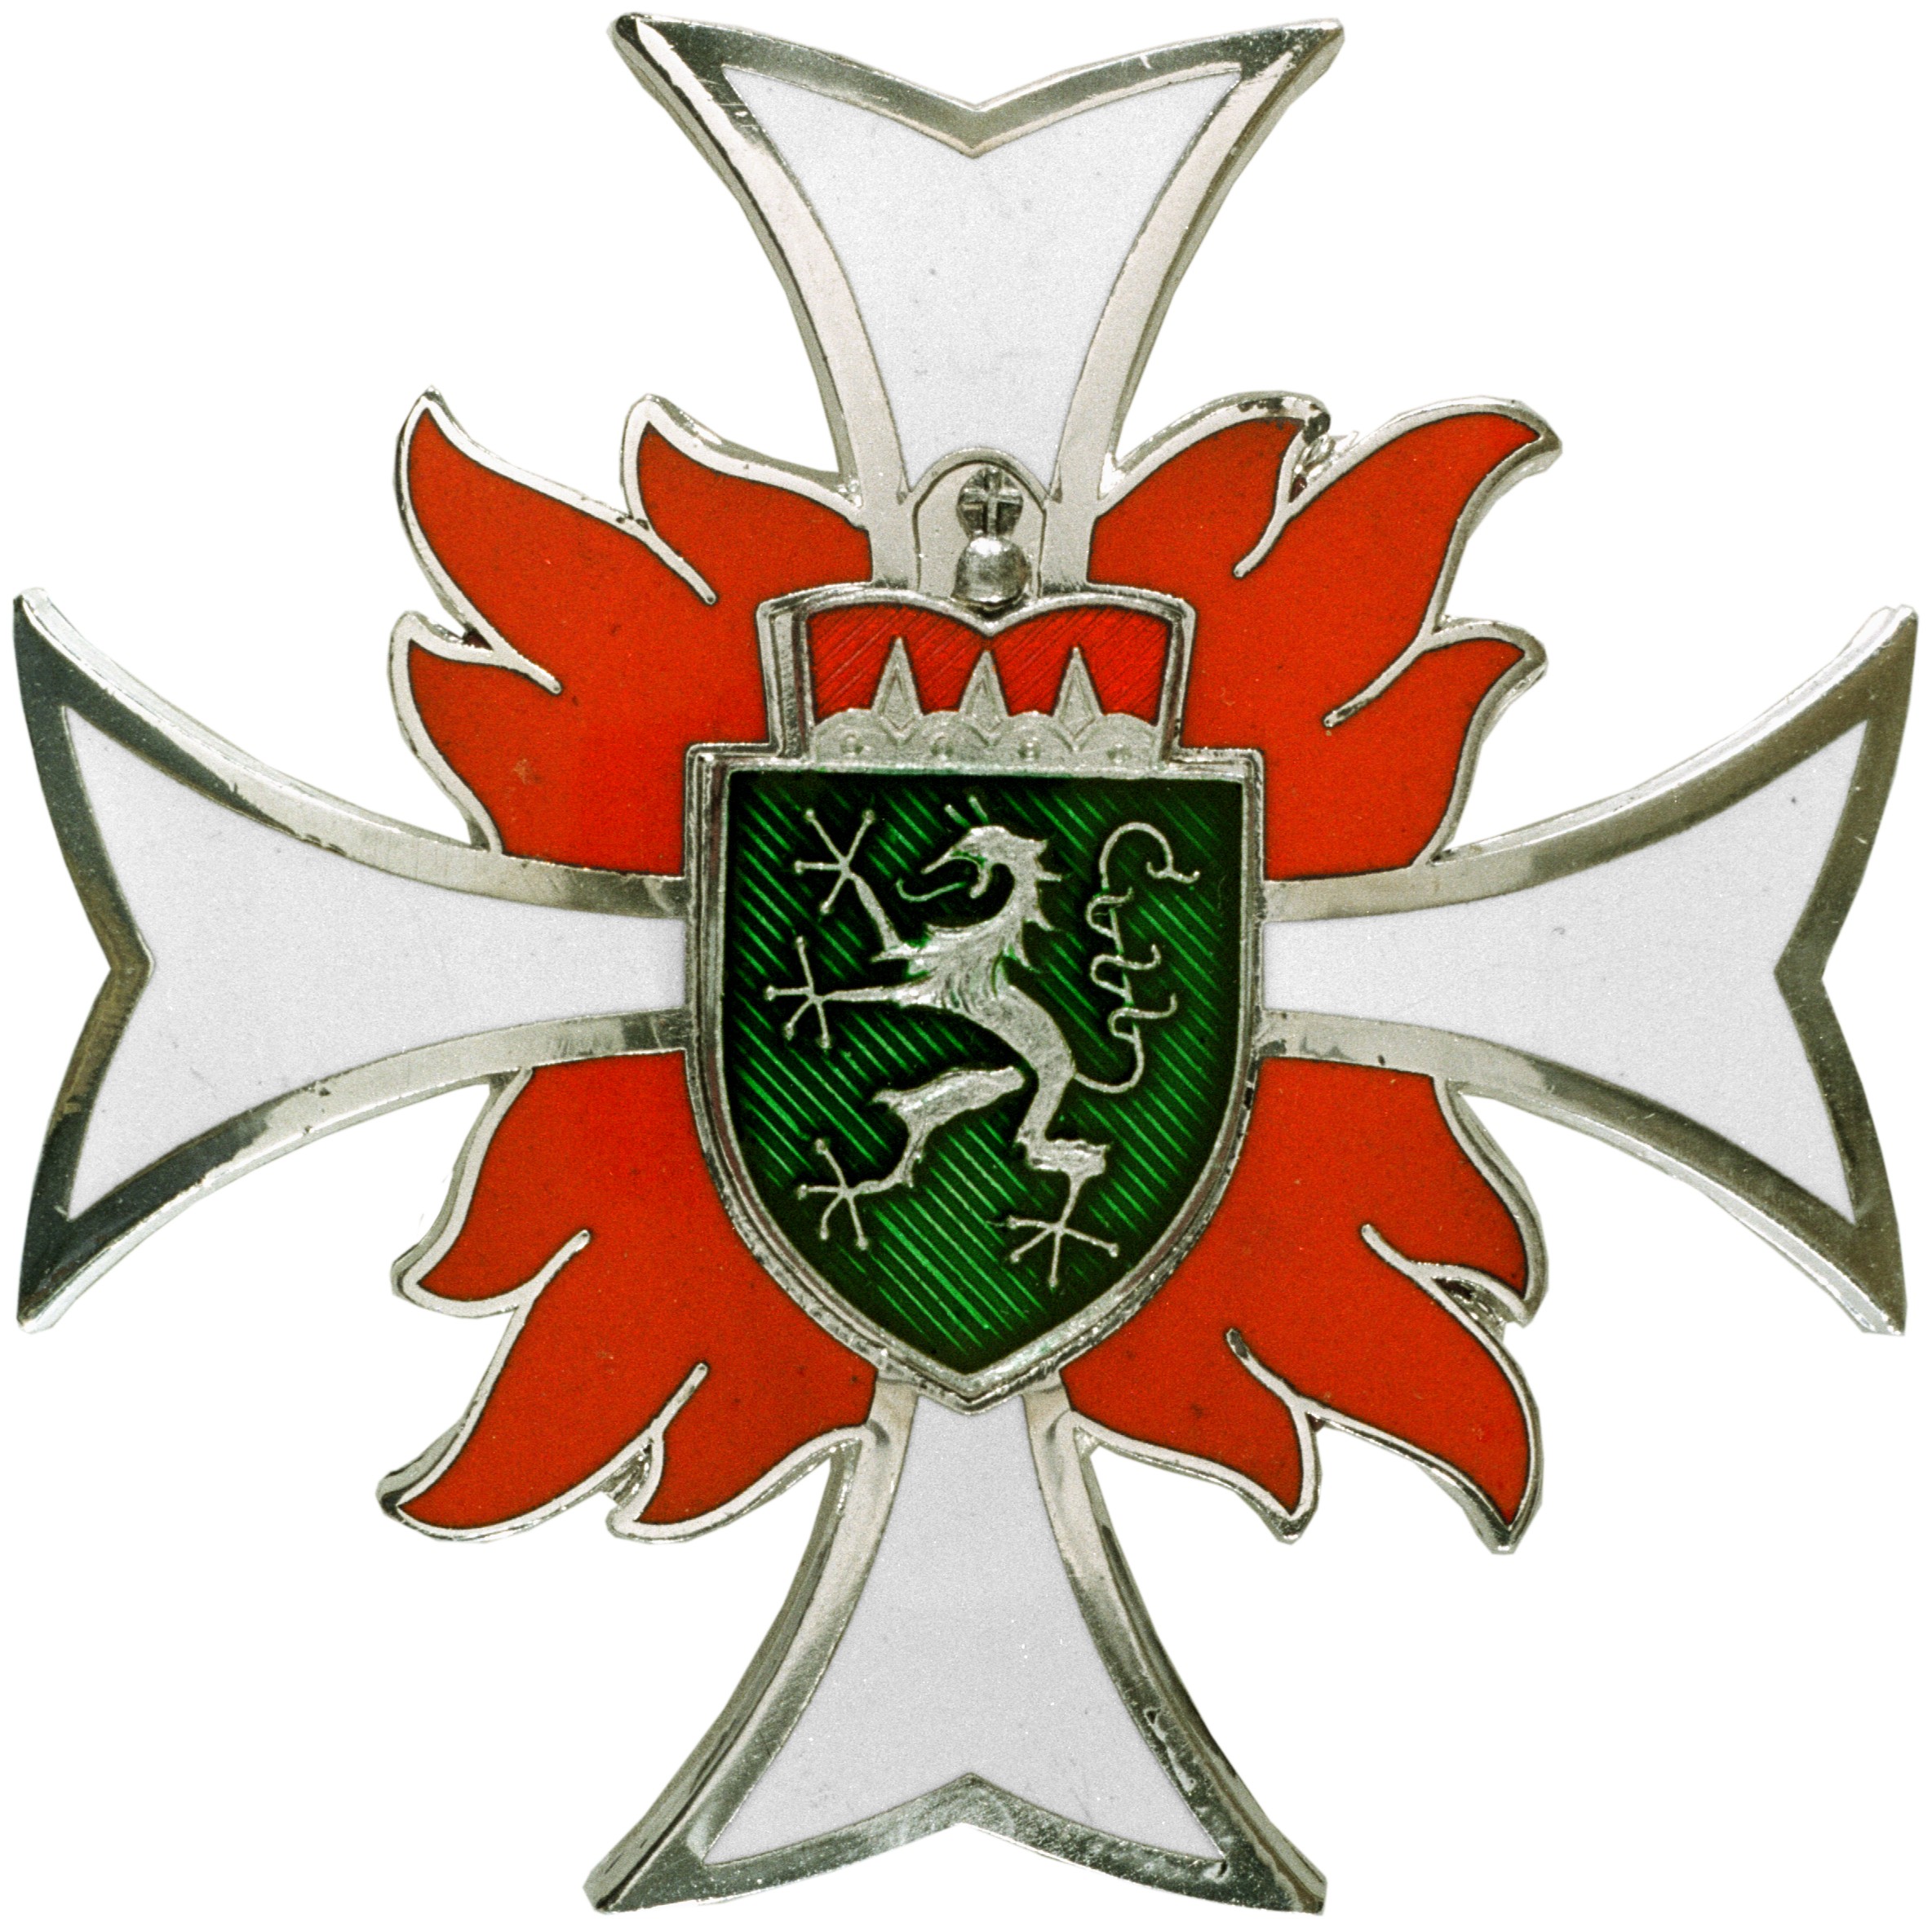 Großes Silbernes Verdienstzeichen des Landesfeuerwehrverbandes